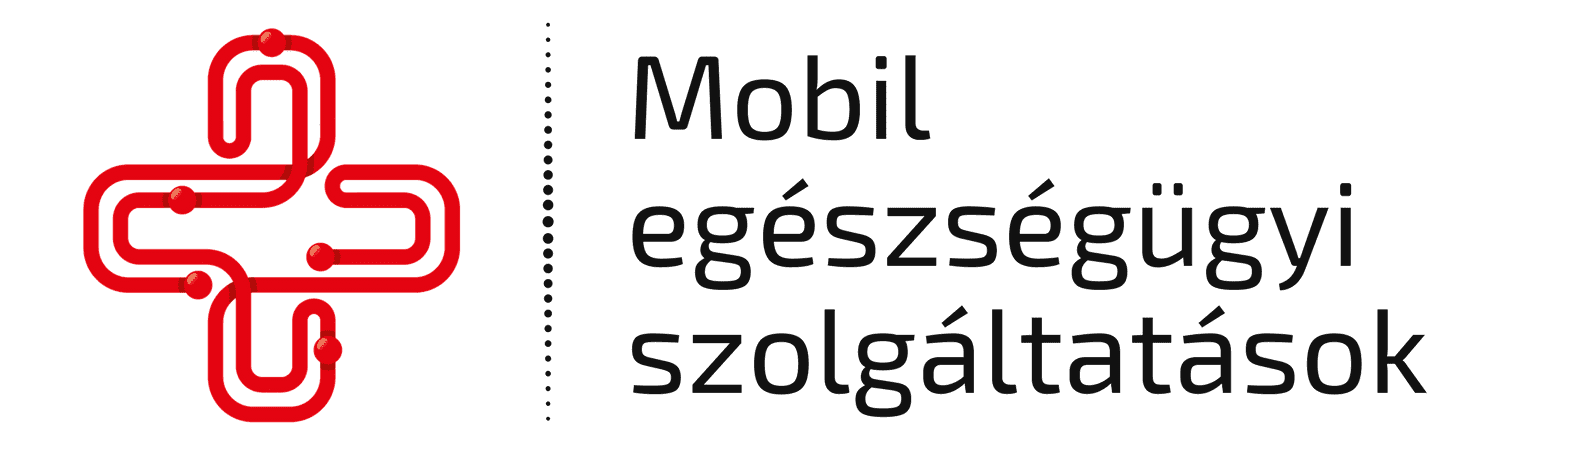 Mobil egészségügyi szolgáltatások logója